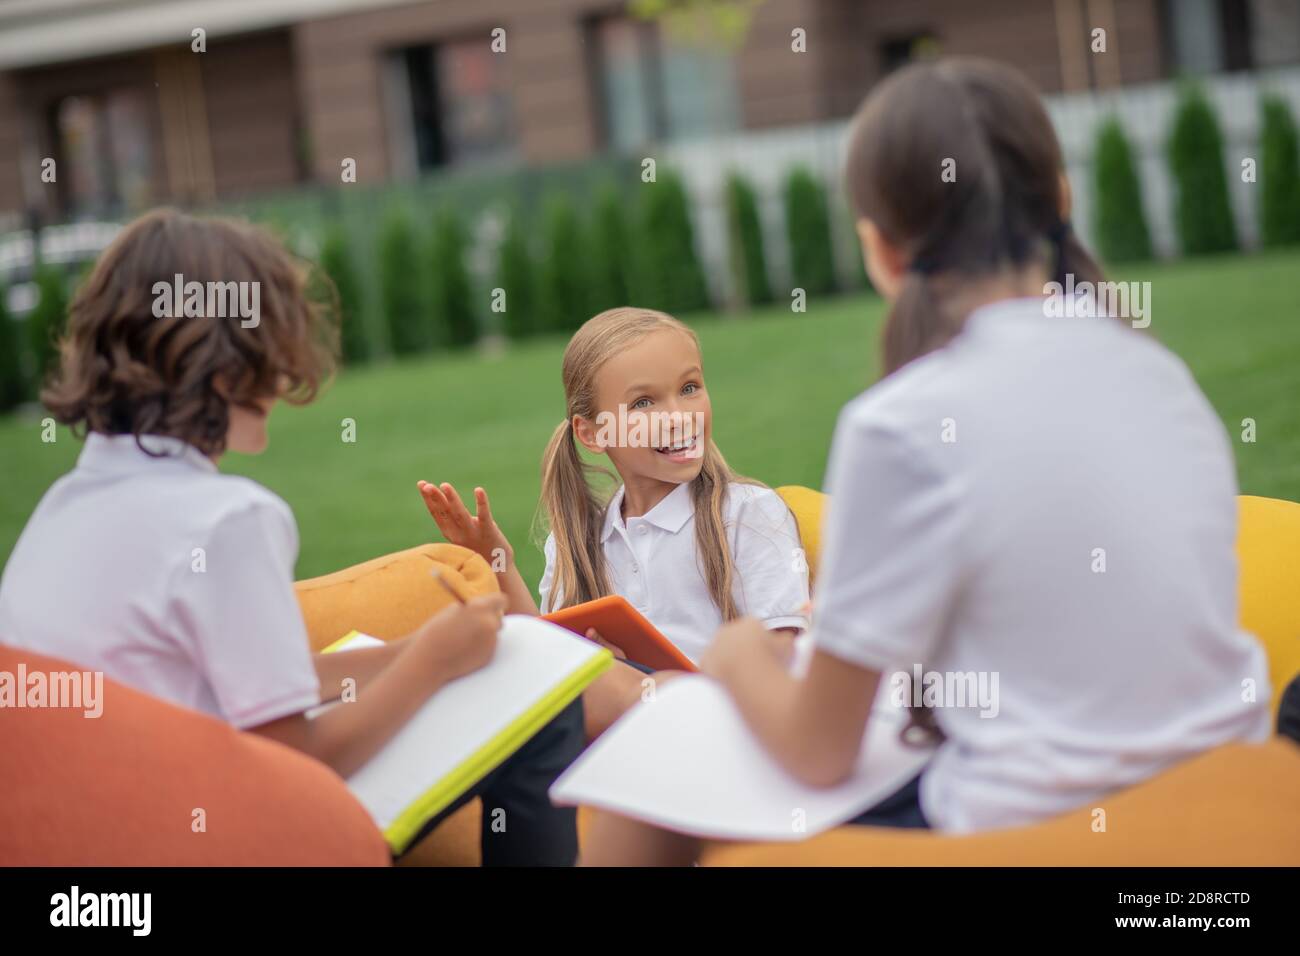 Kinder in weißen Hemden studieren zusammen und schauen positiv Stockfoto